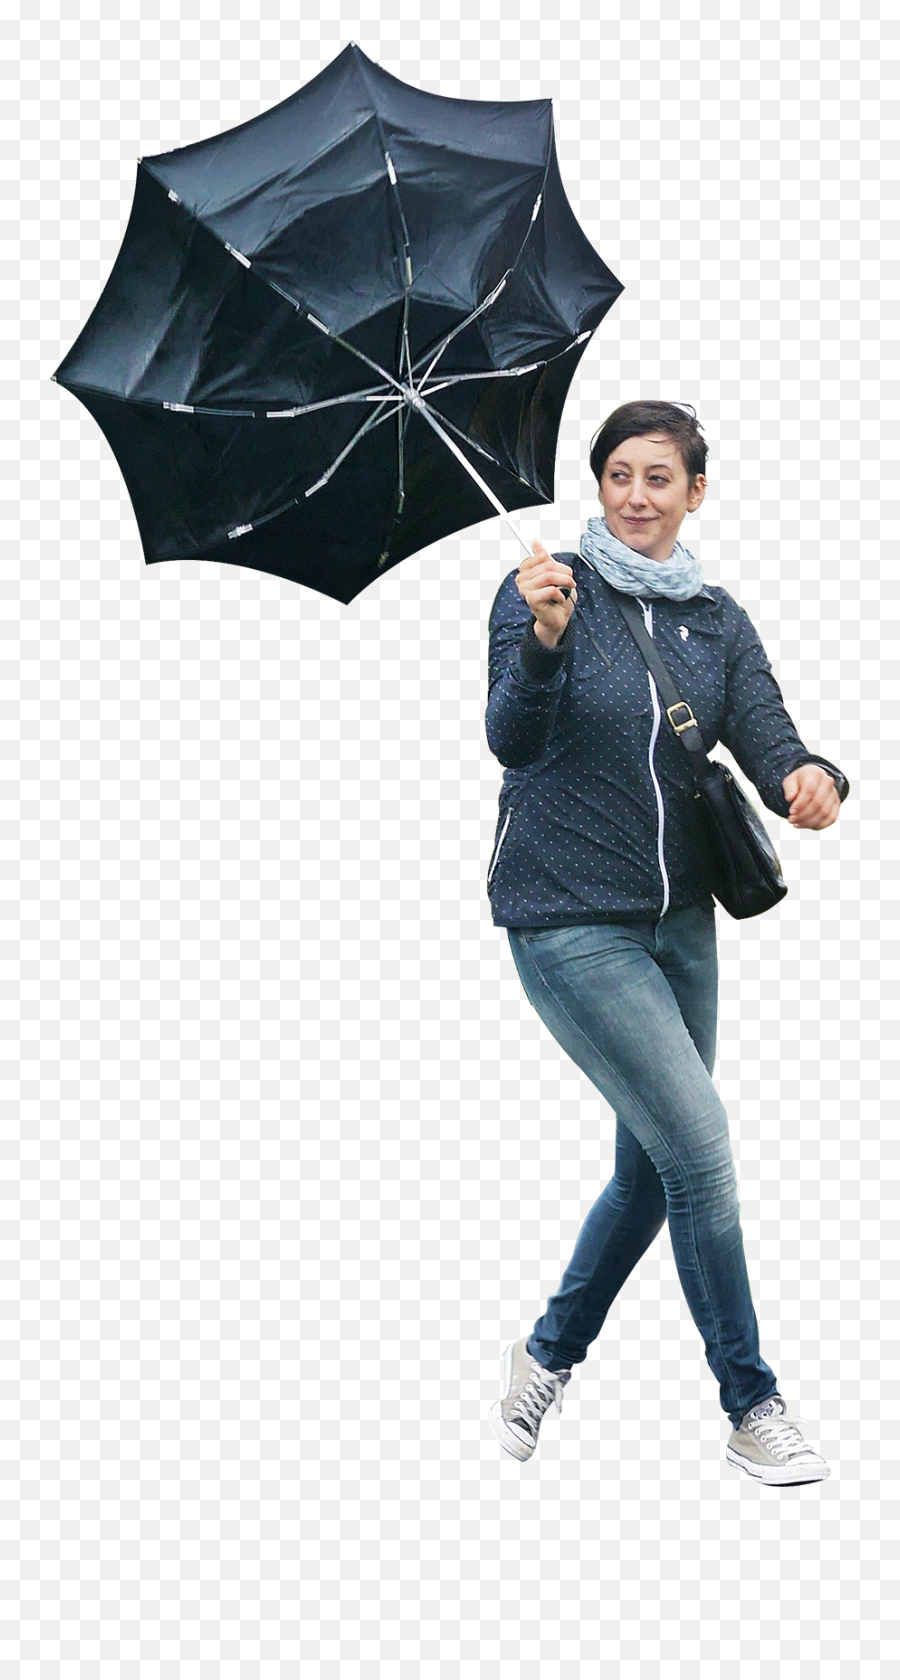 Walking In The Rain Png Image Emoji,Rain Png